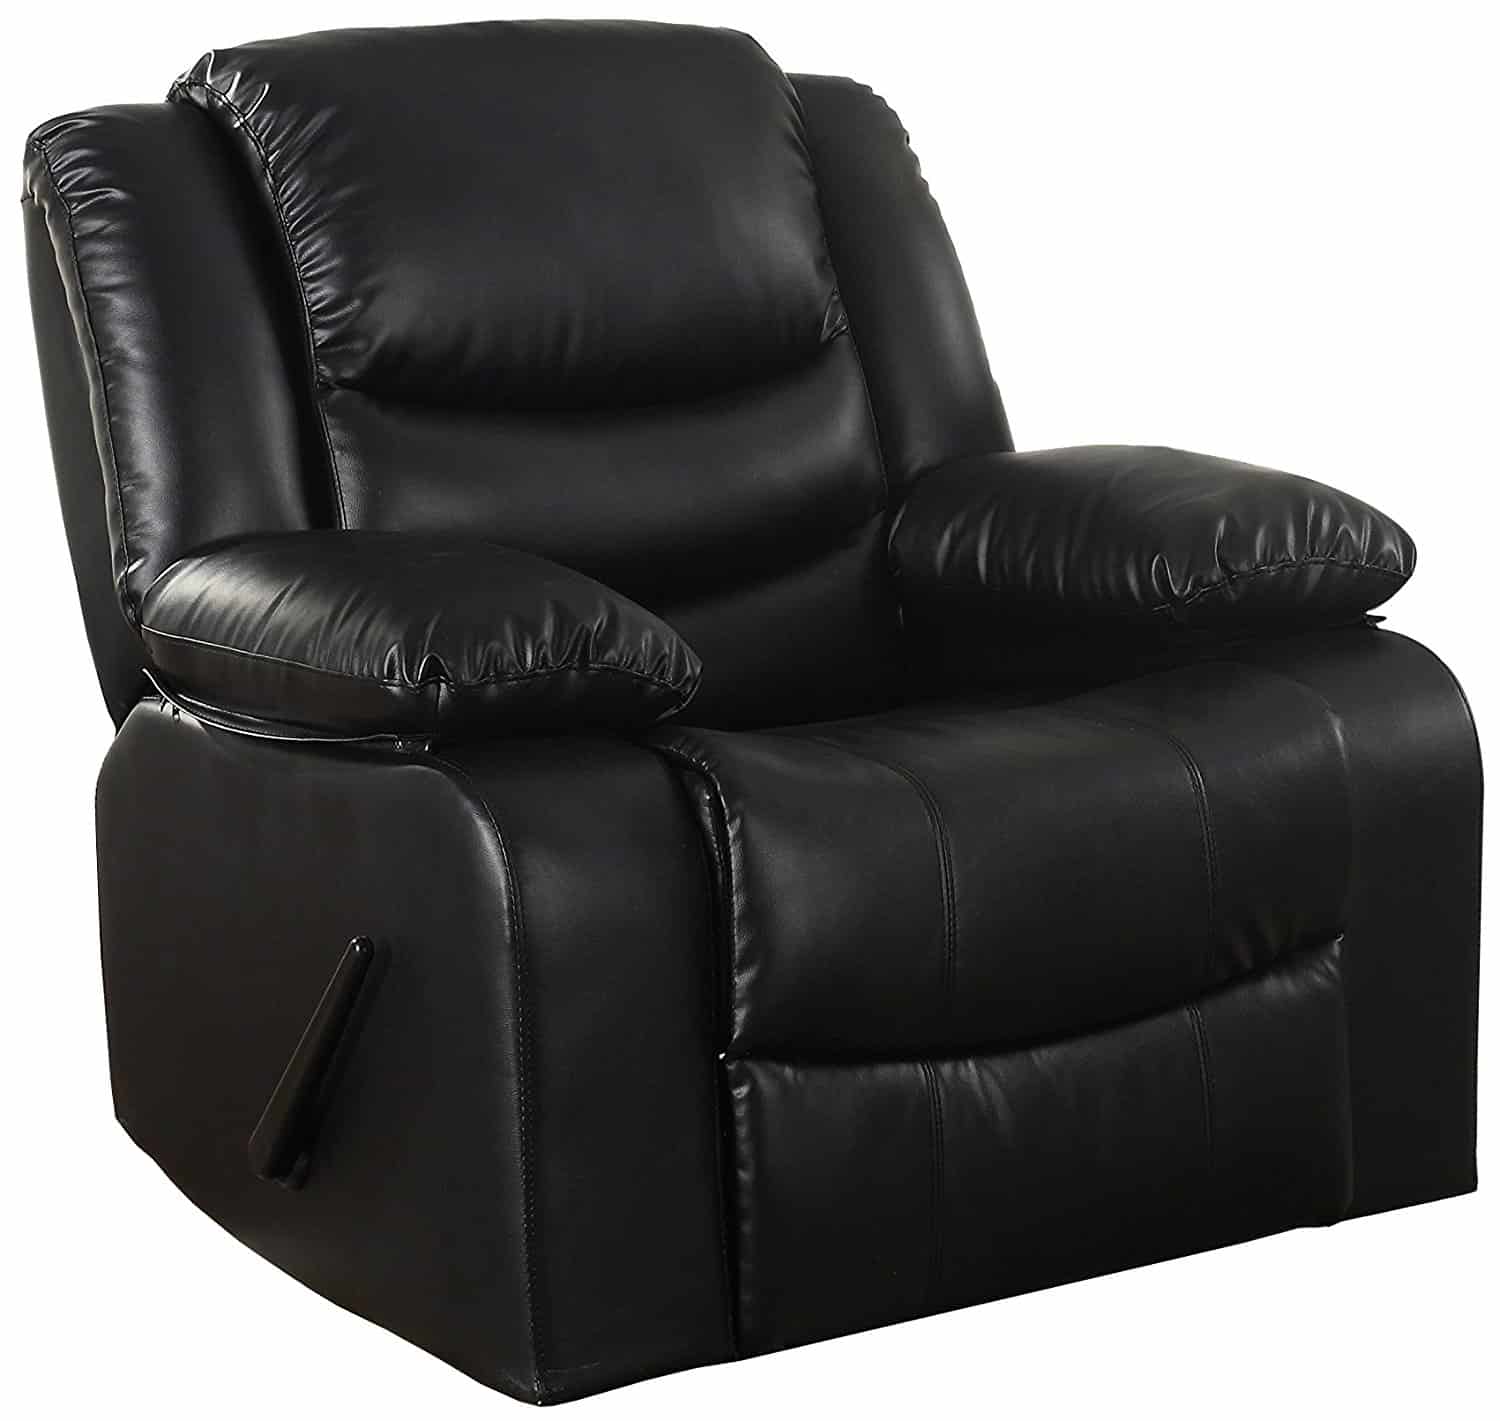 黑色倾斜的摇椅与粘合皮革内饰和过度填充填充的座位和扶手休息。